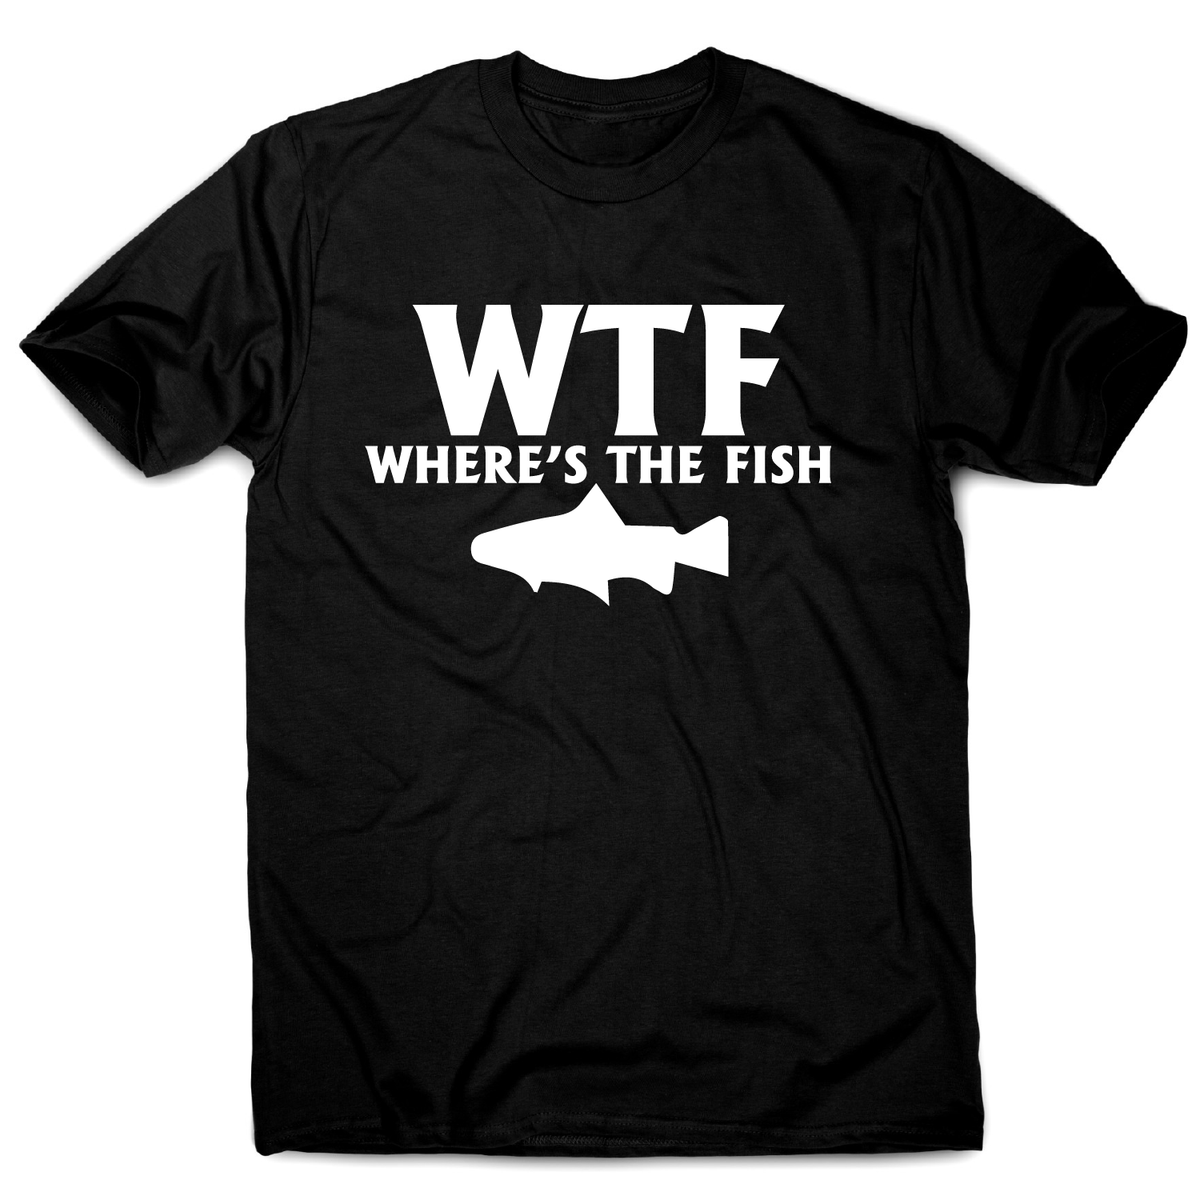 WTF Where's The Fish Funny Fishing T-Shirt Men's Black / M